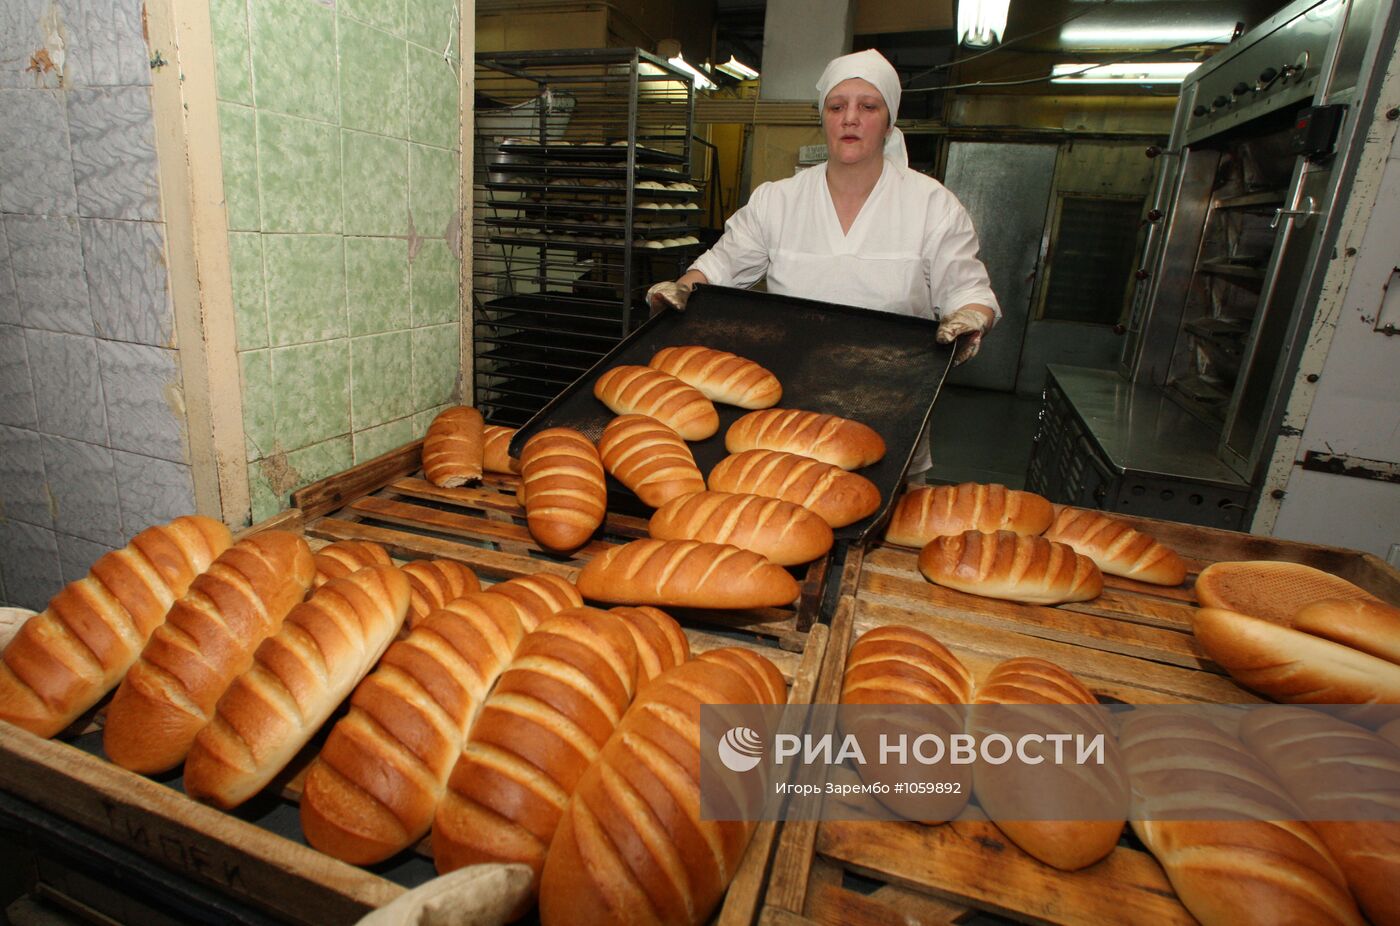 Работа Полесского хлебозавода в Калининградской области